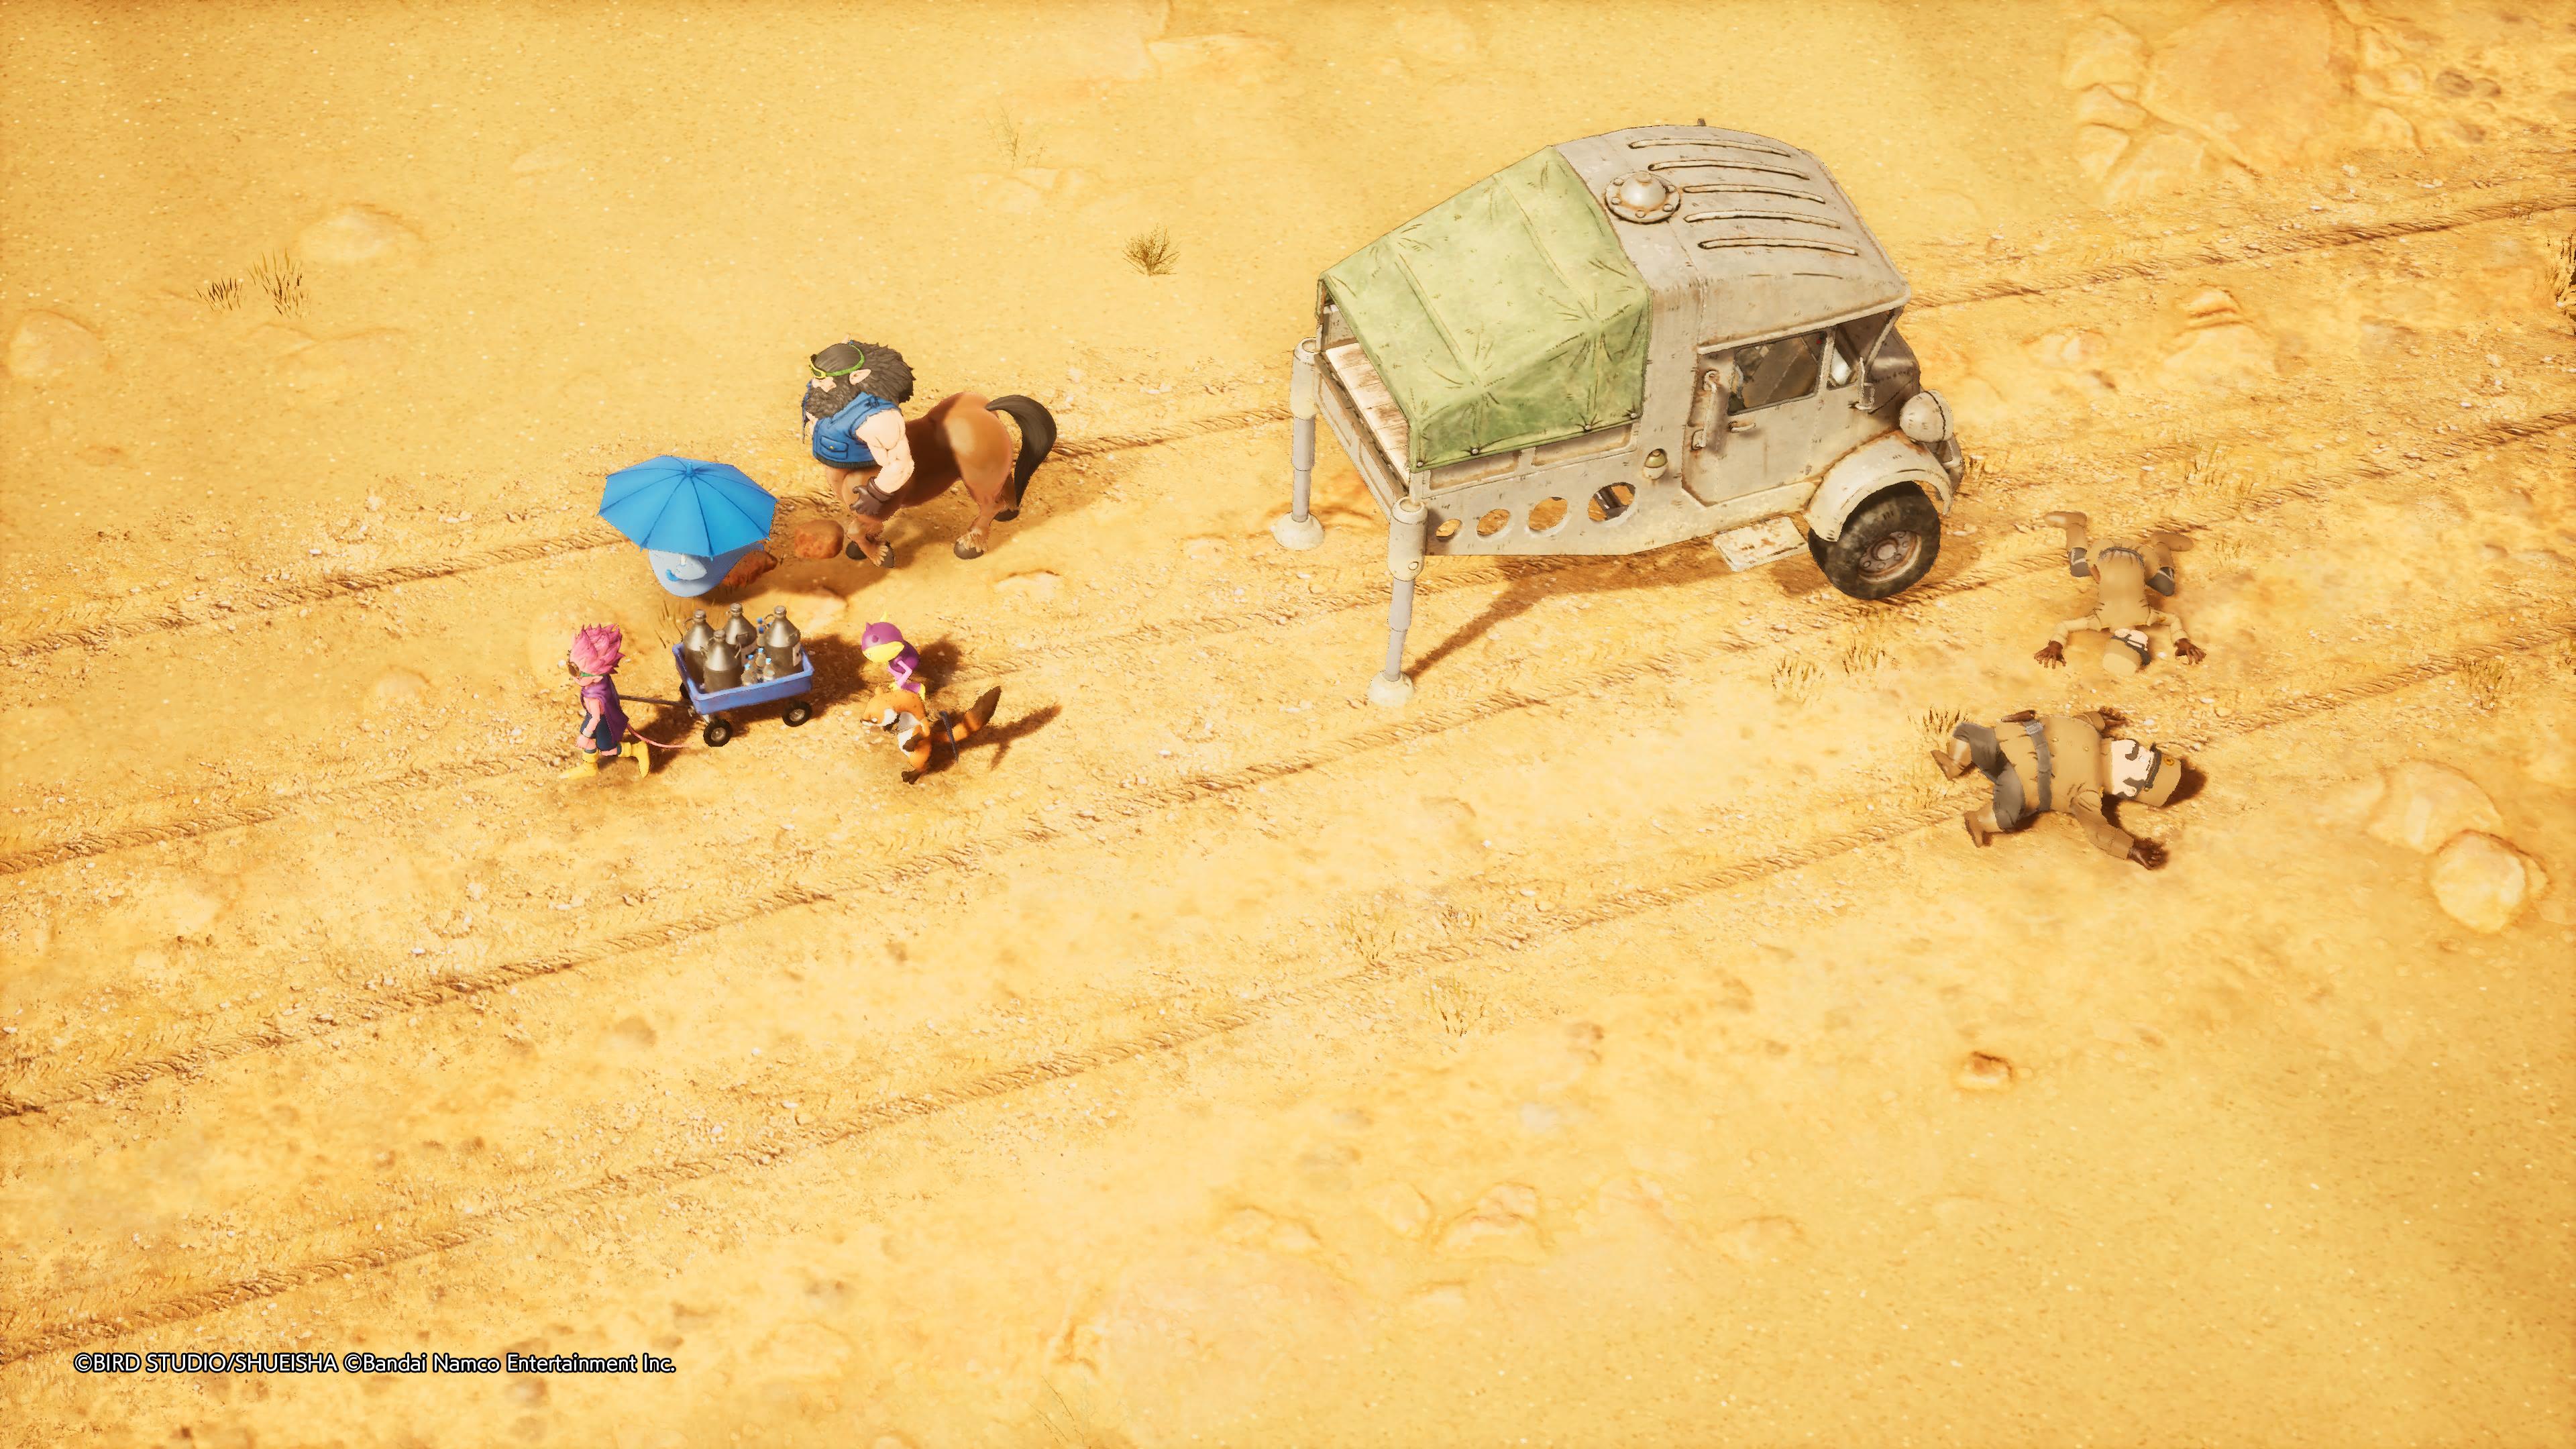 Reseña: Sand Land, una fiel adaptación de la obra de Akira Toriyama 30